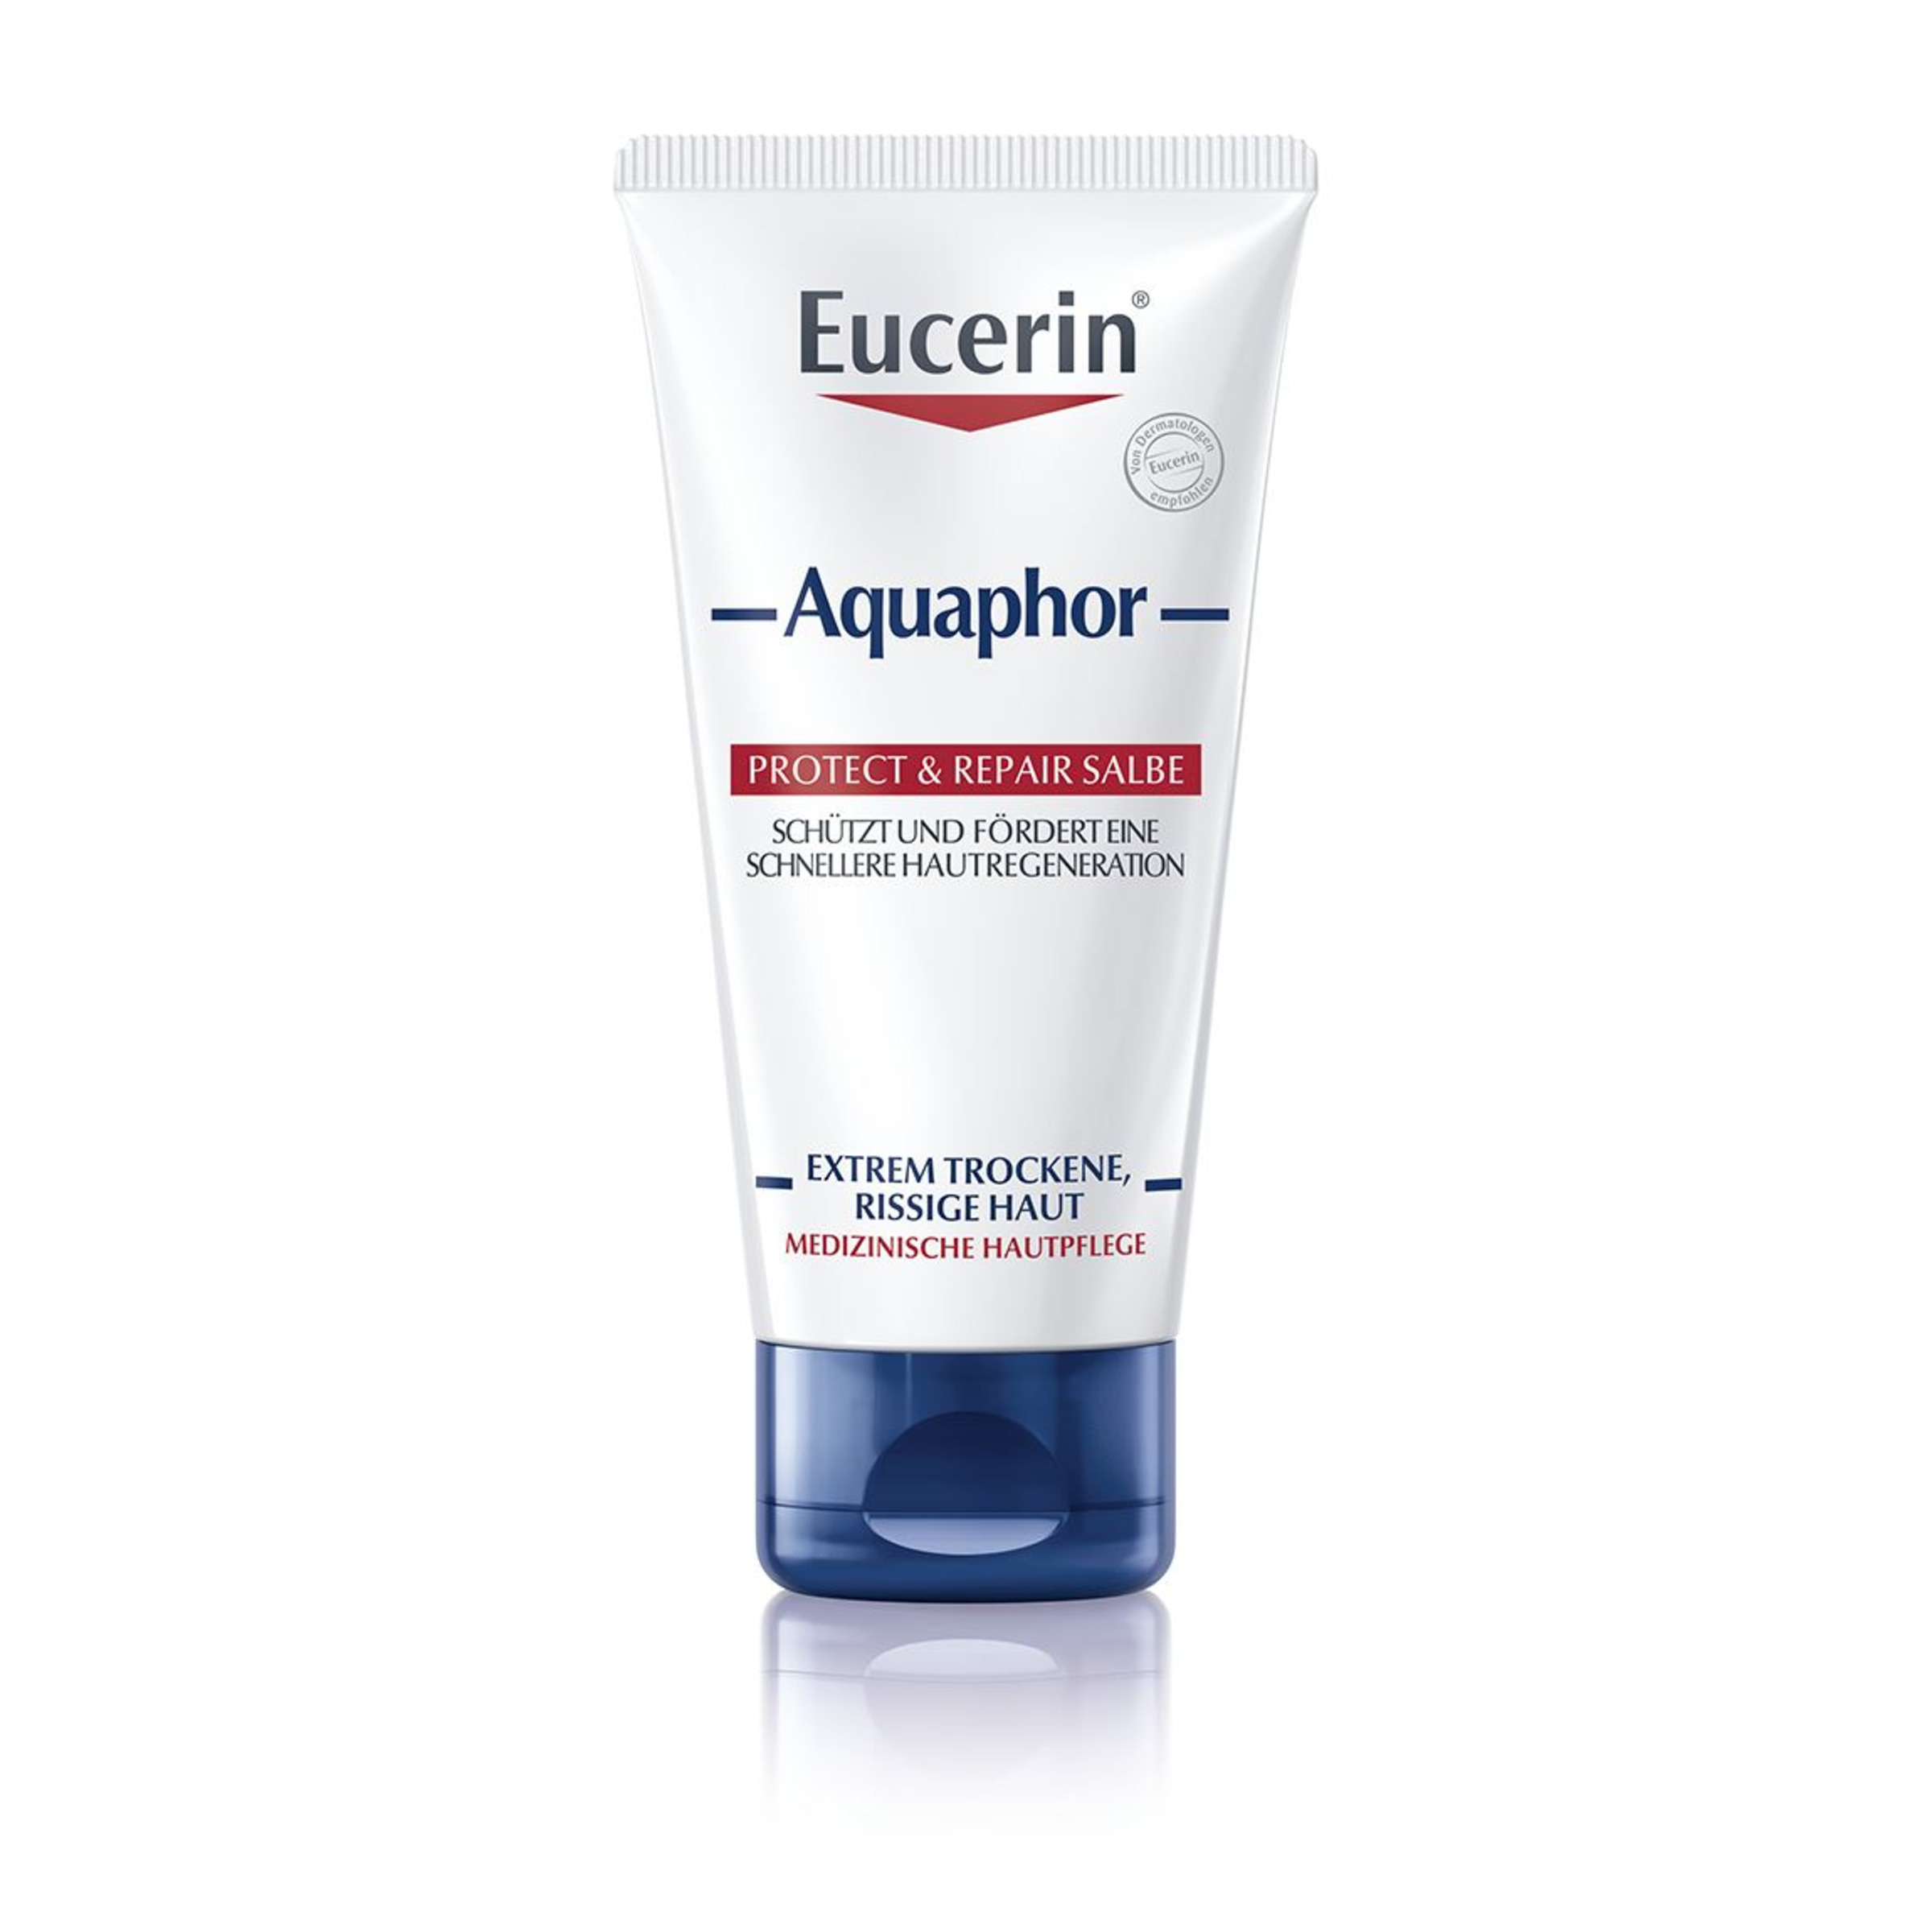 Eucerin Aquaphor Protect & Repair Salbe, 45ml